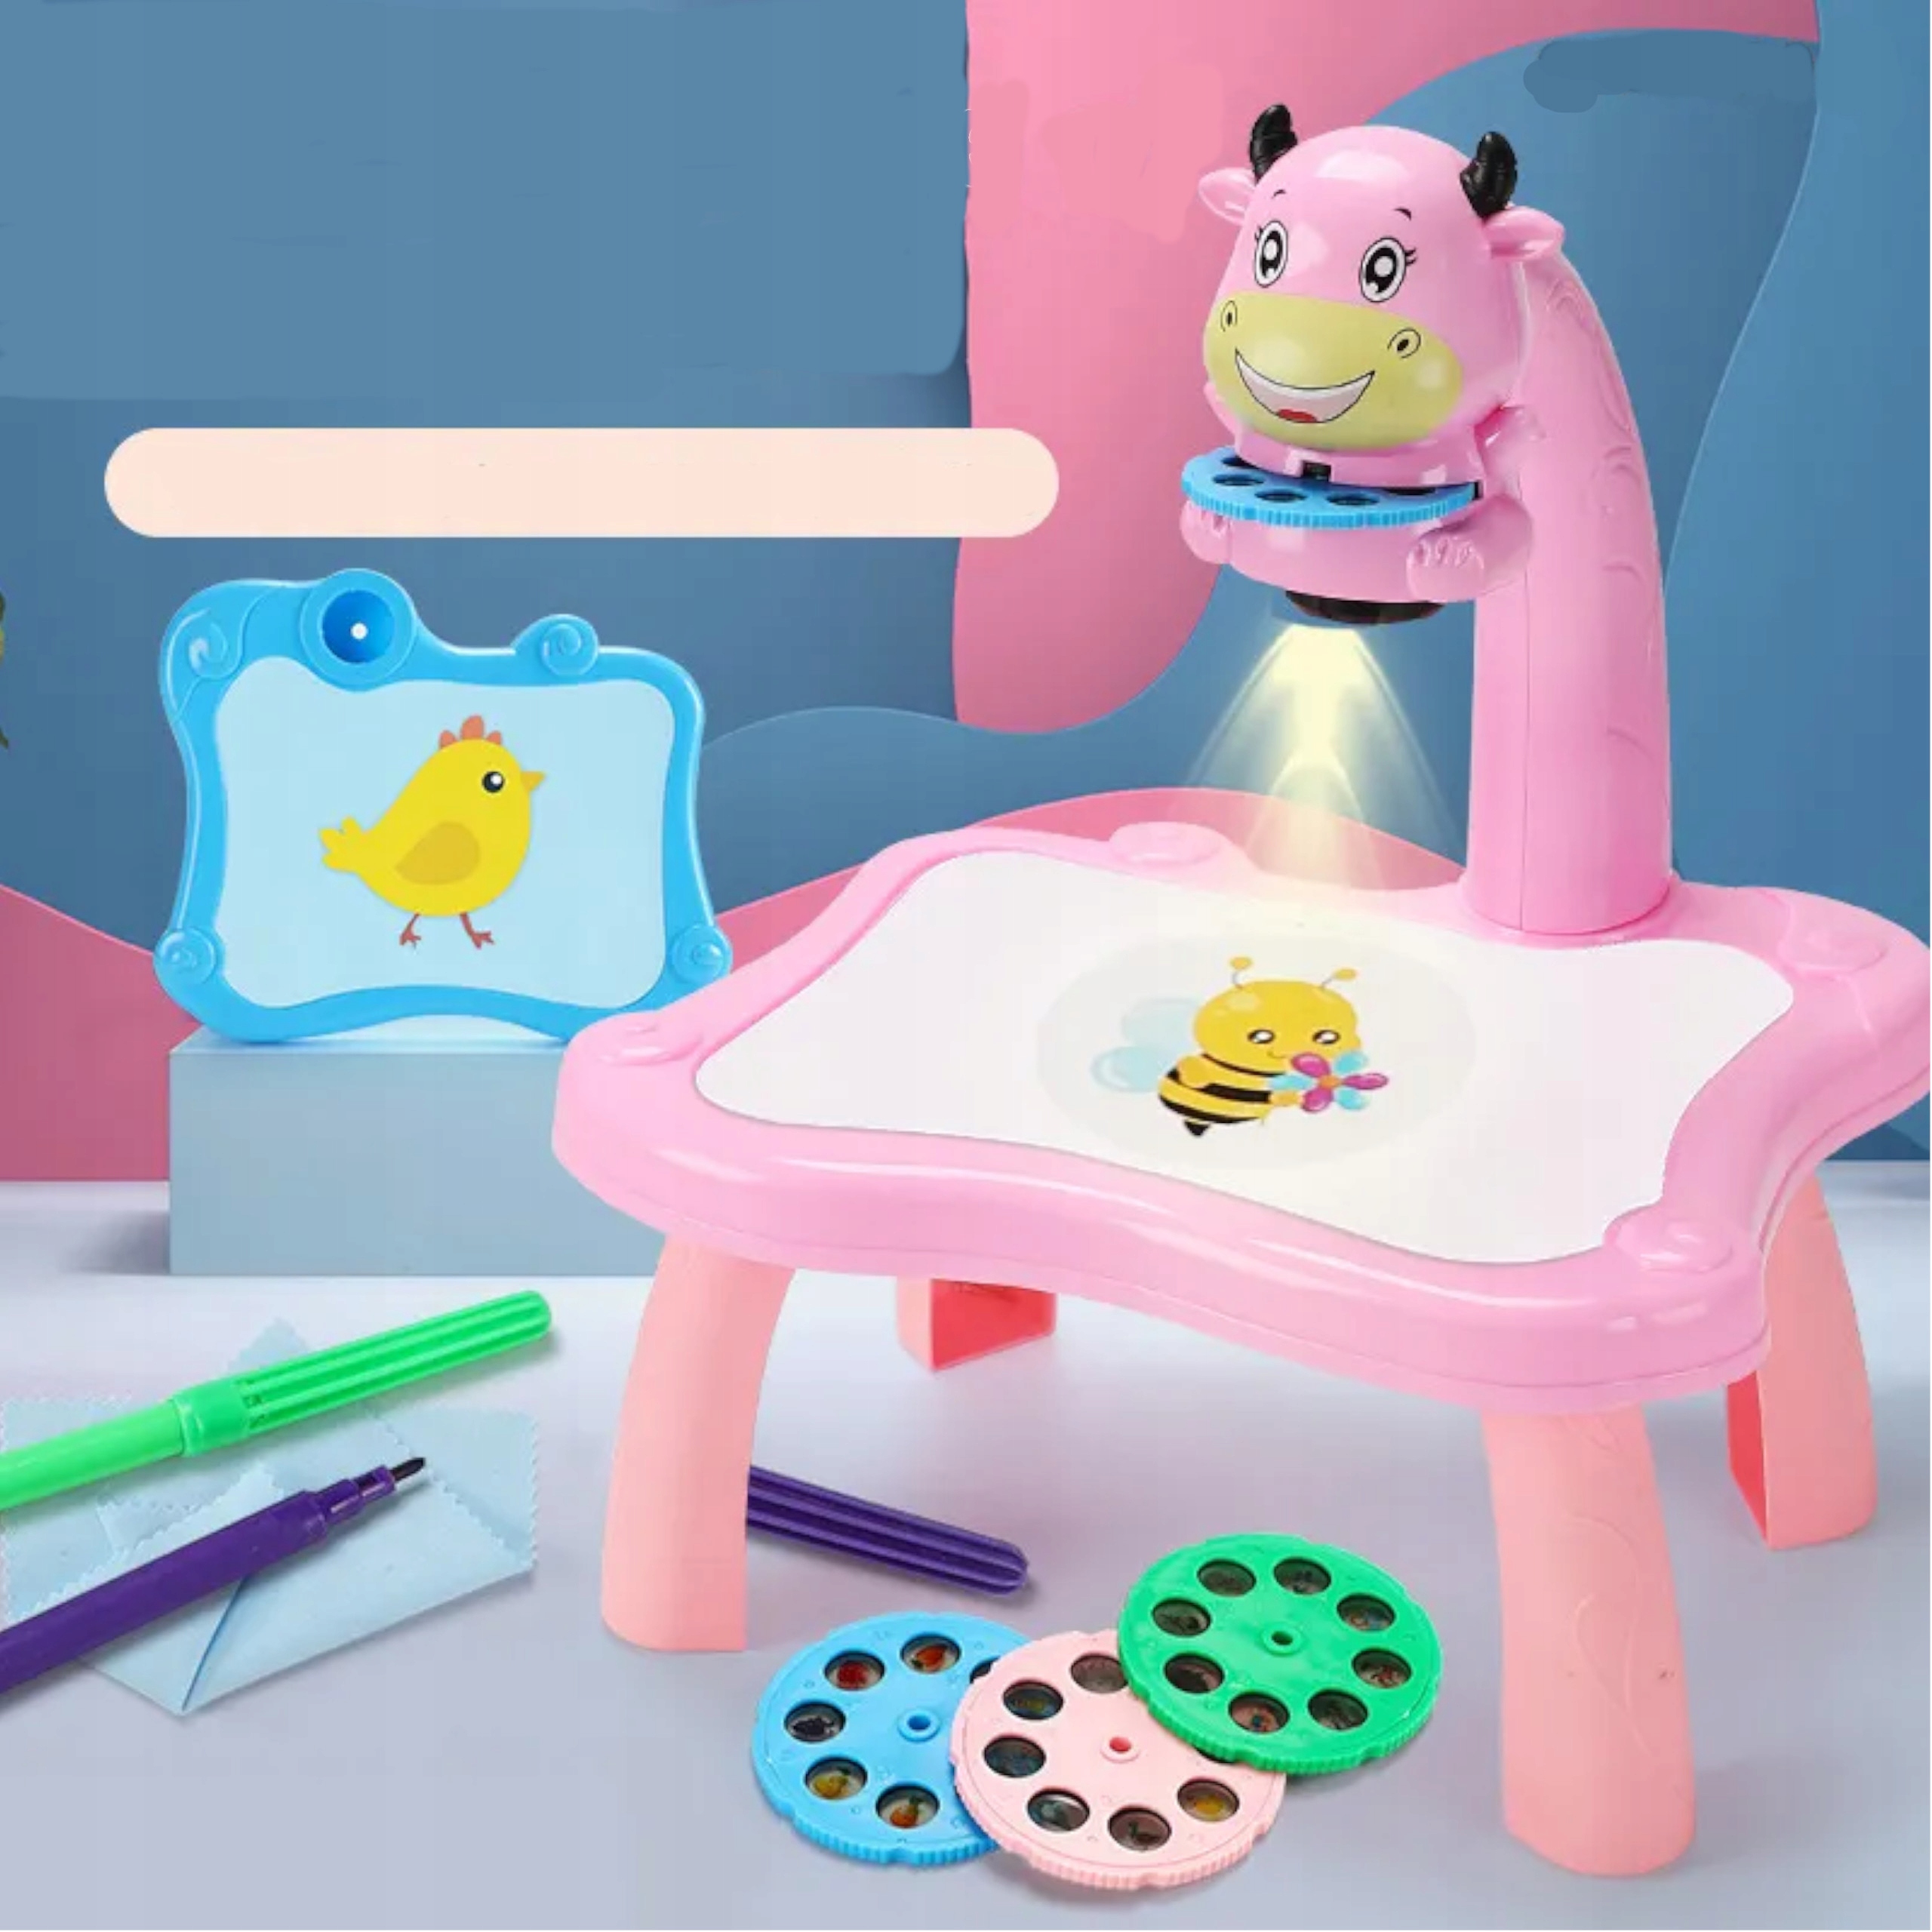 Projektor do rysowania stolik krówka mazaki 222-1R Wiek dziecka 3 lata +